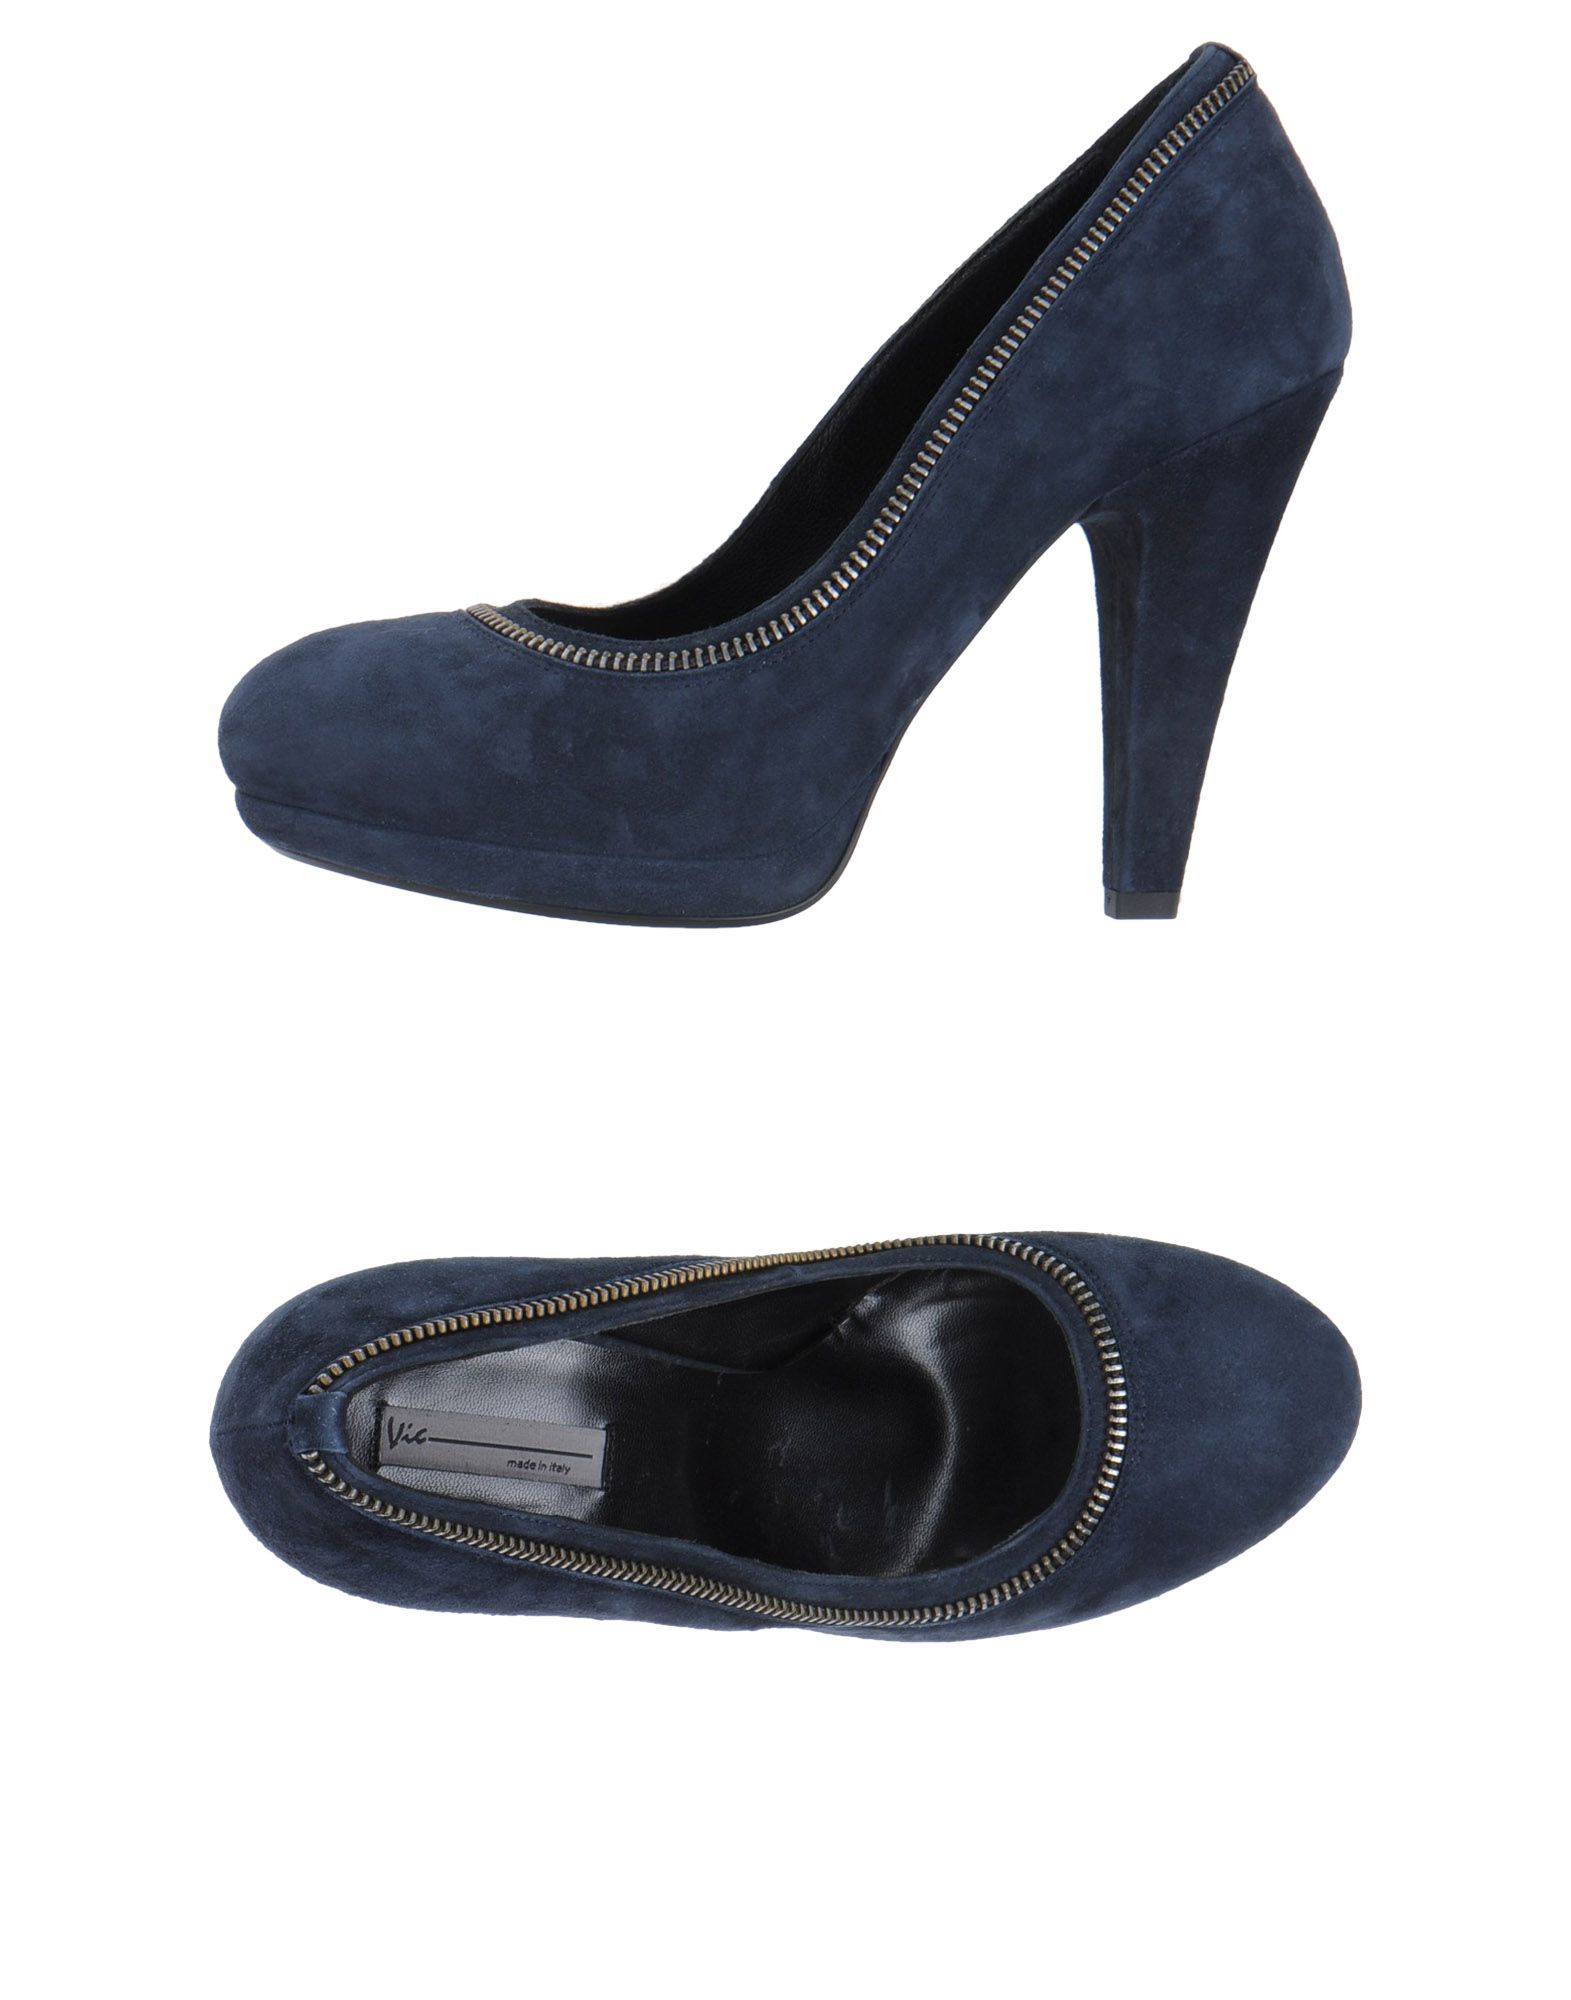 Foto Vic Zapatos De SalóN Plataforma Mujer Azul oscuro foto 595554